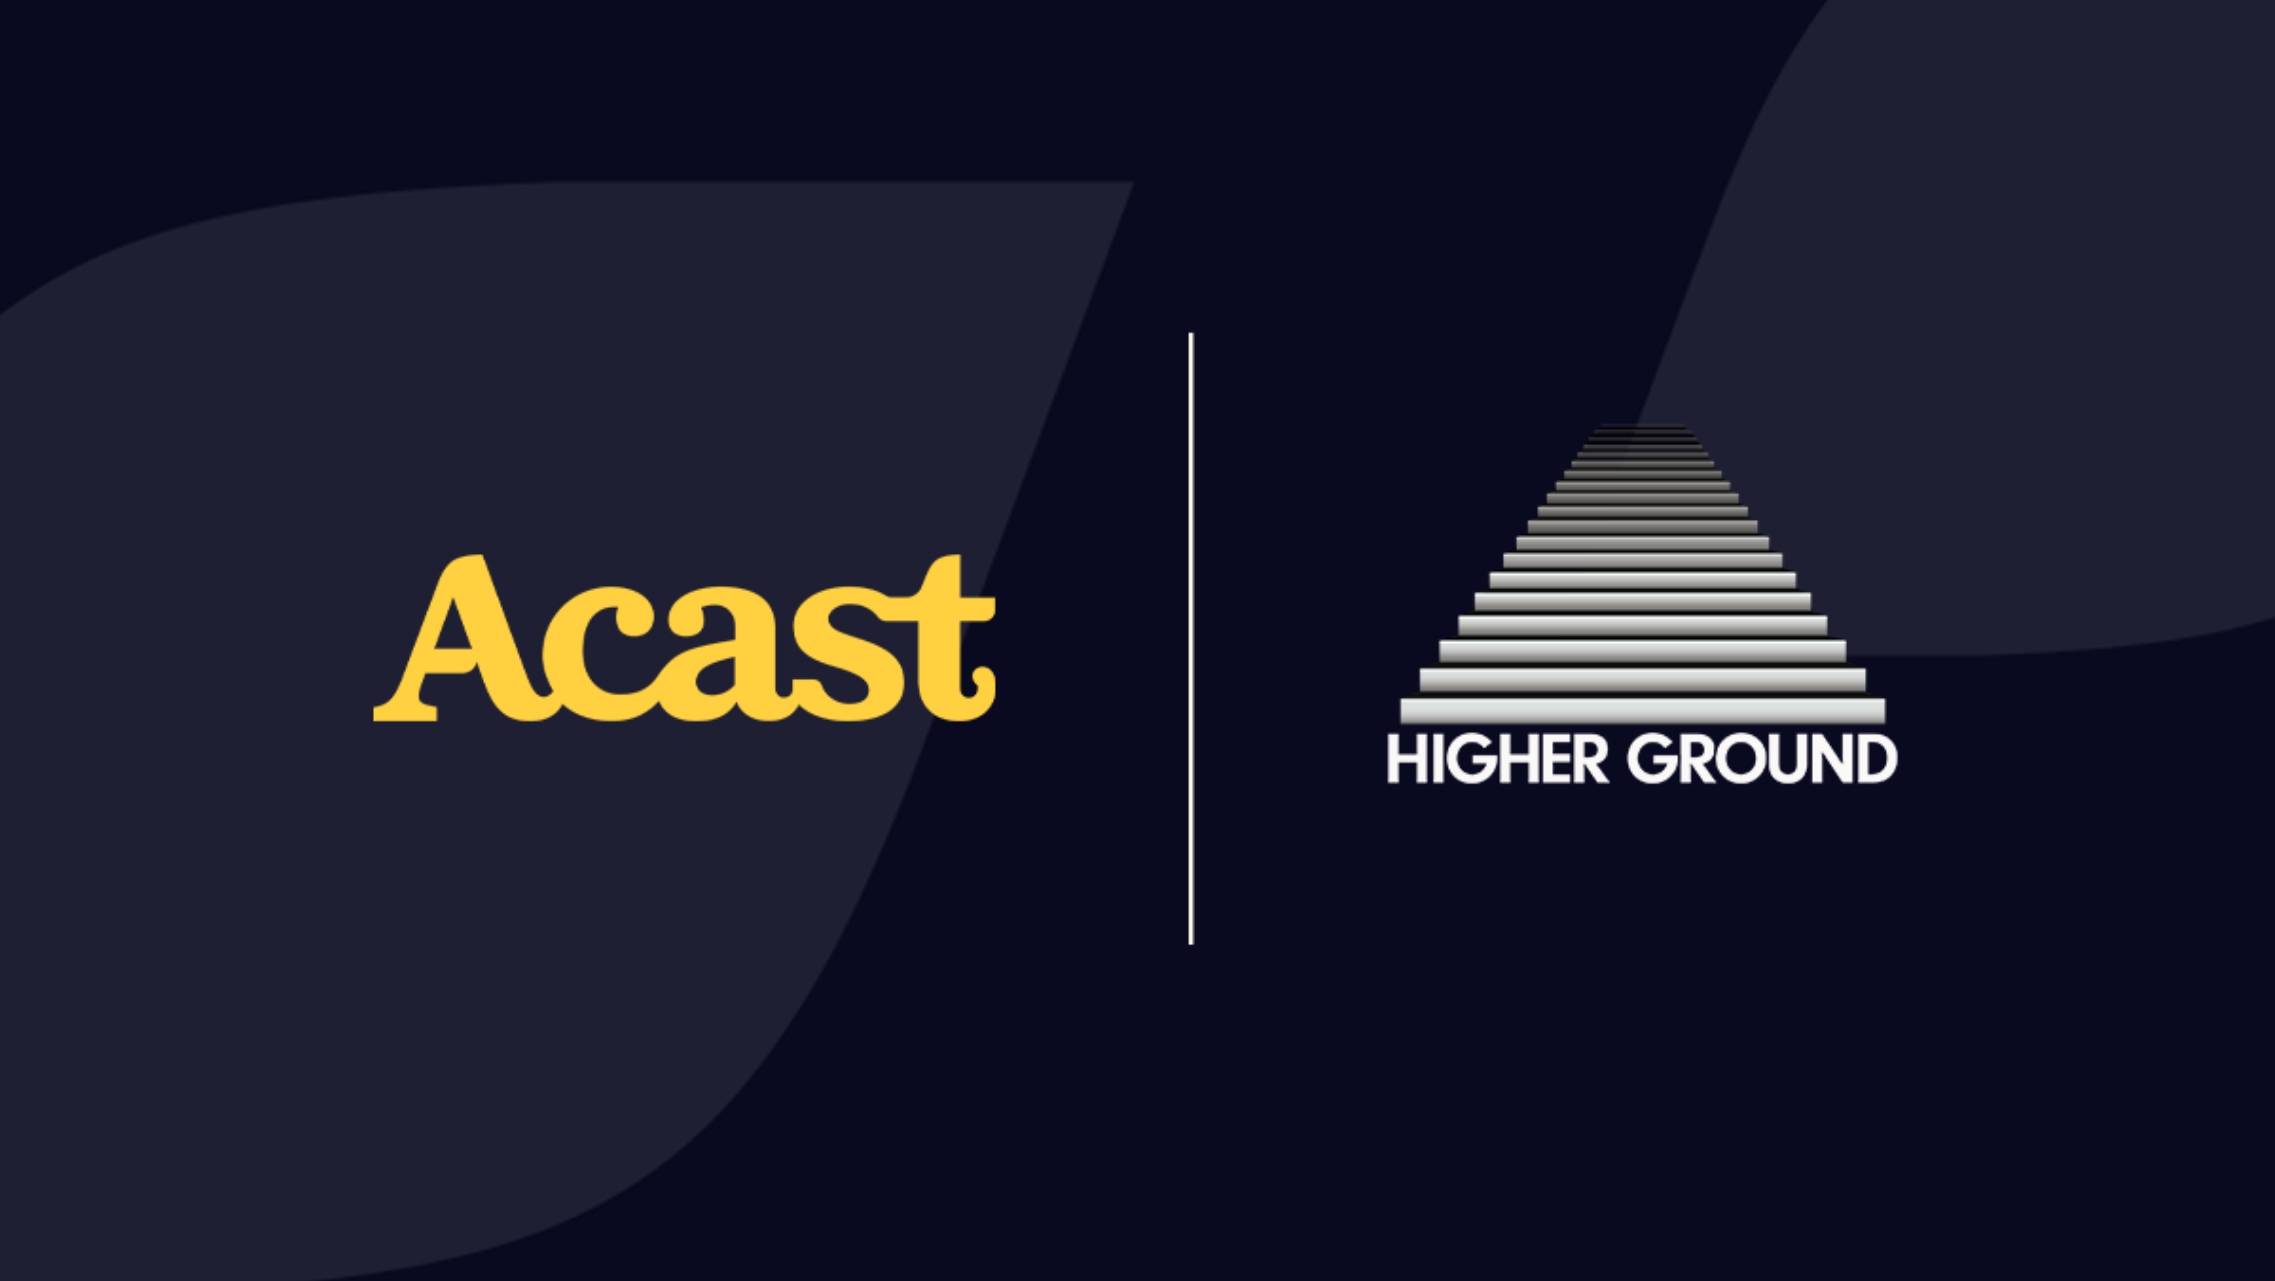 Podcasts : accord entre l’hébergeur Acast et la société de production Higher Ground